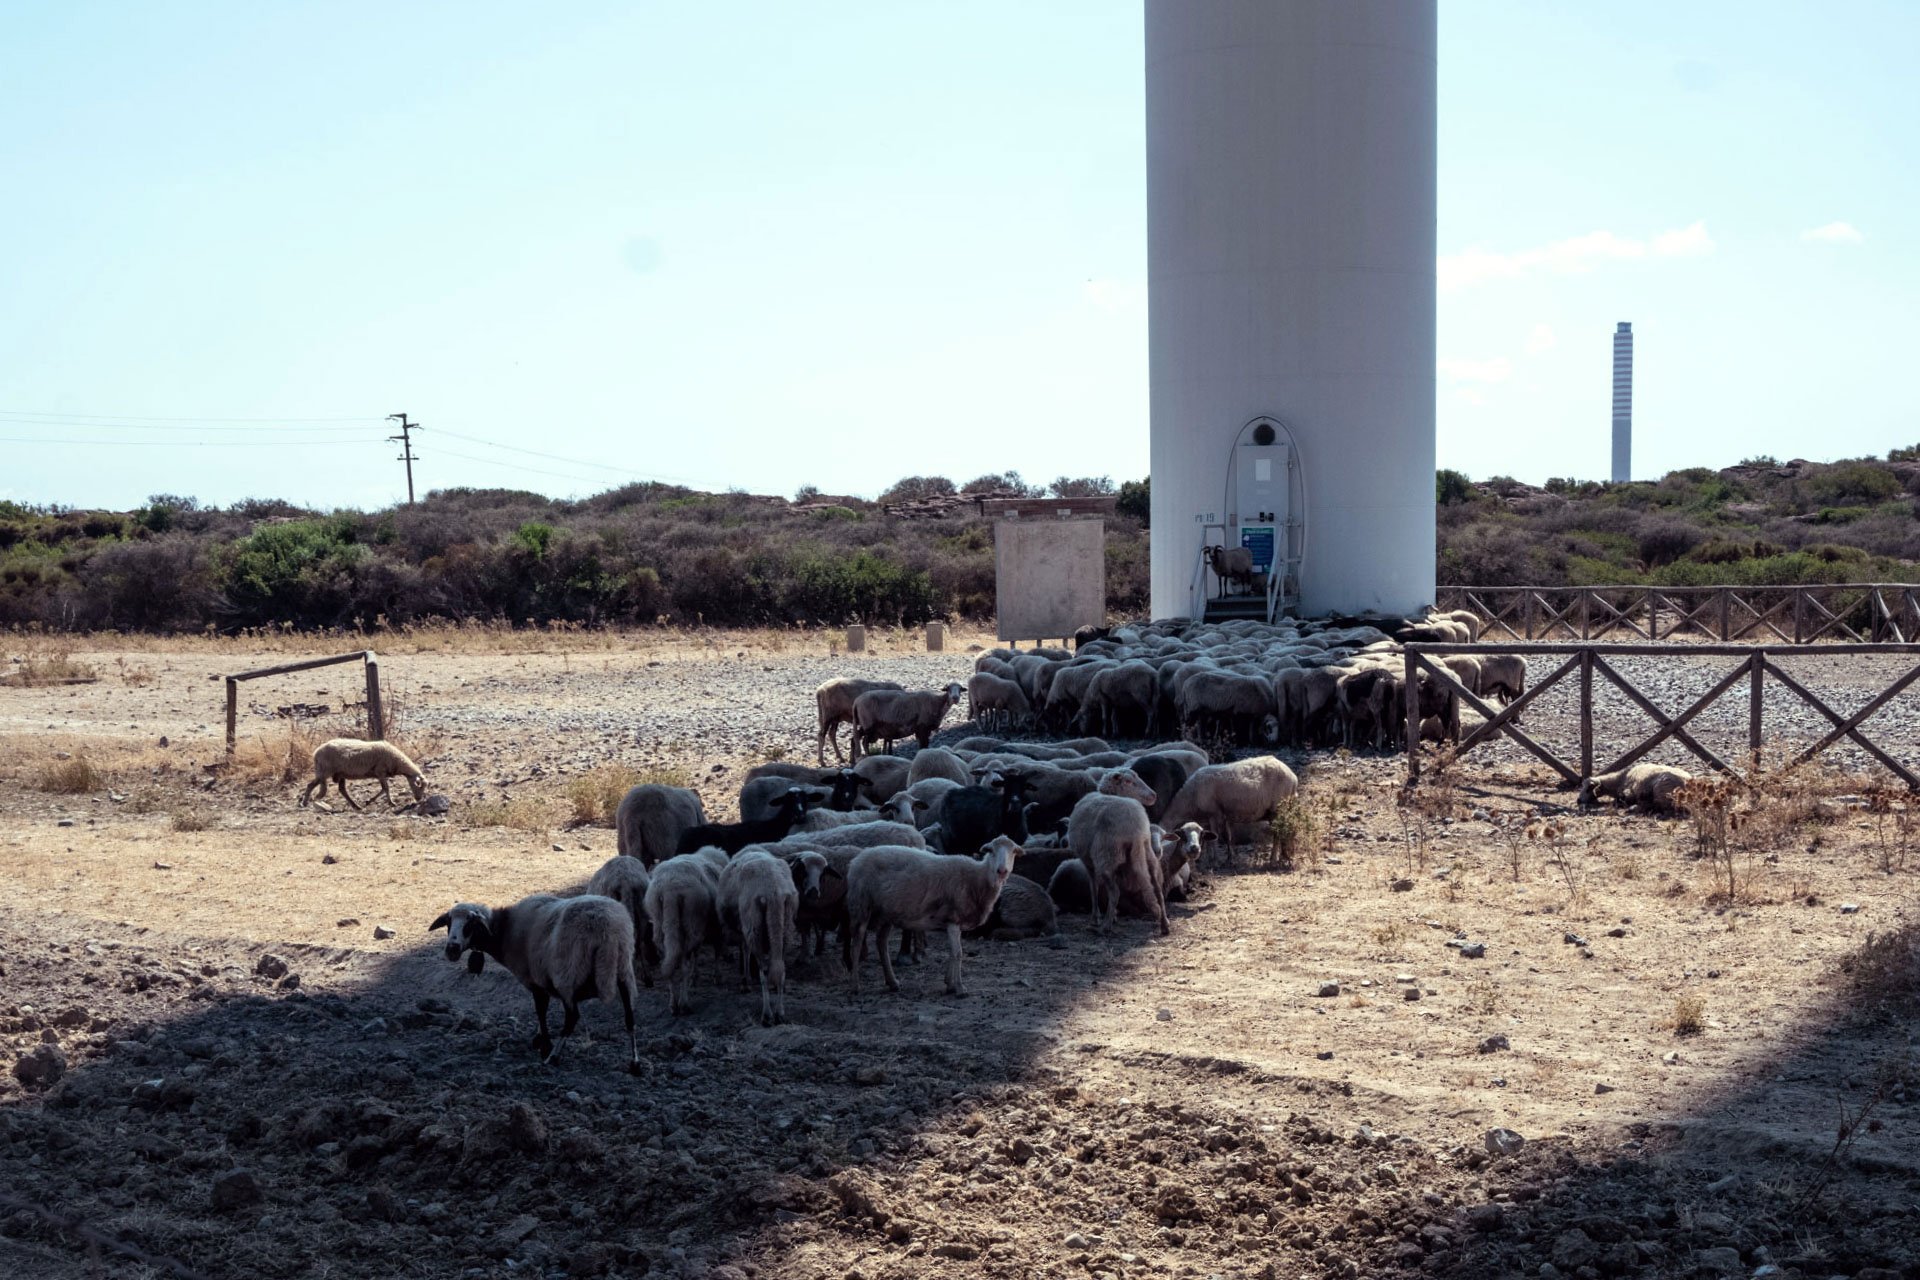  Pascolo di pecore nelle aree contaminate vicino al polo industriale di Portovesme dove adesso sorge un parco eolico. “Le terre più vicine alle industrie o sottovento sono quelle più contaminate. Al momento quei terreni sono pressoché tutti abbandona